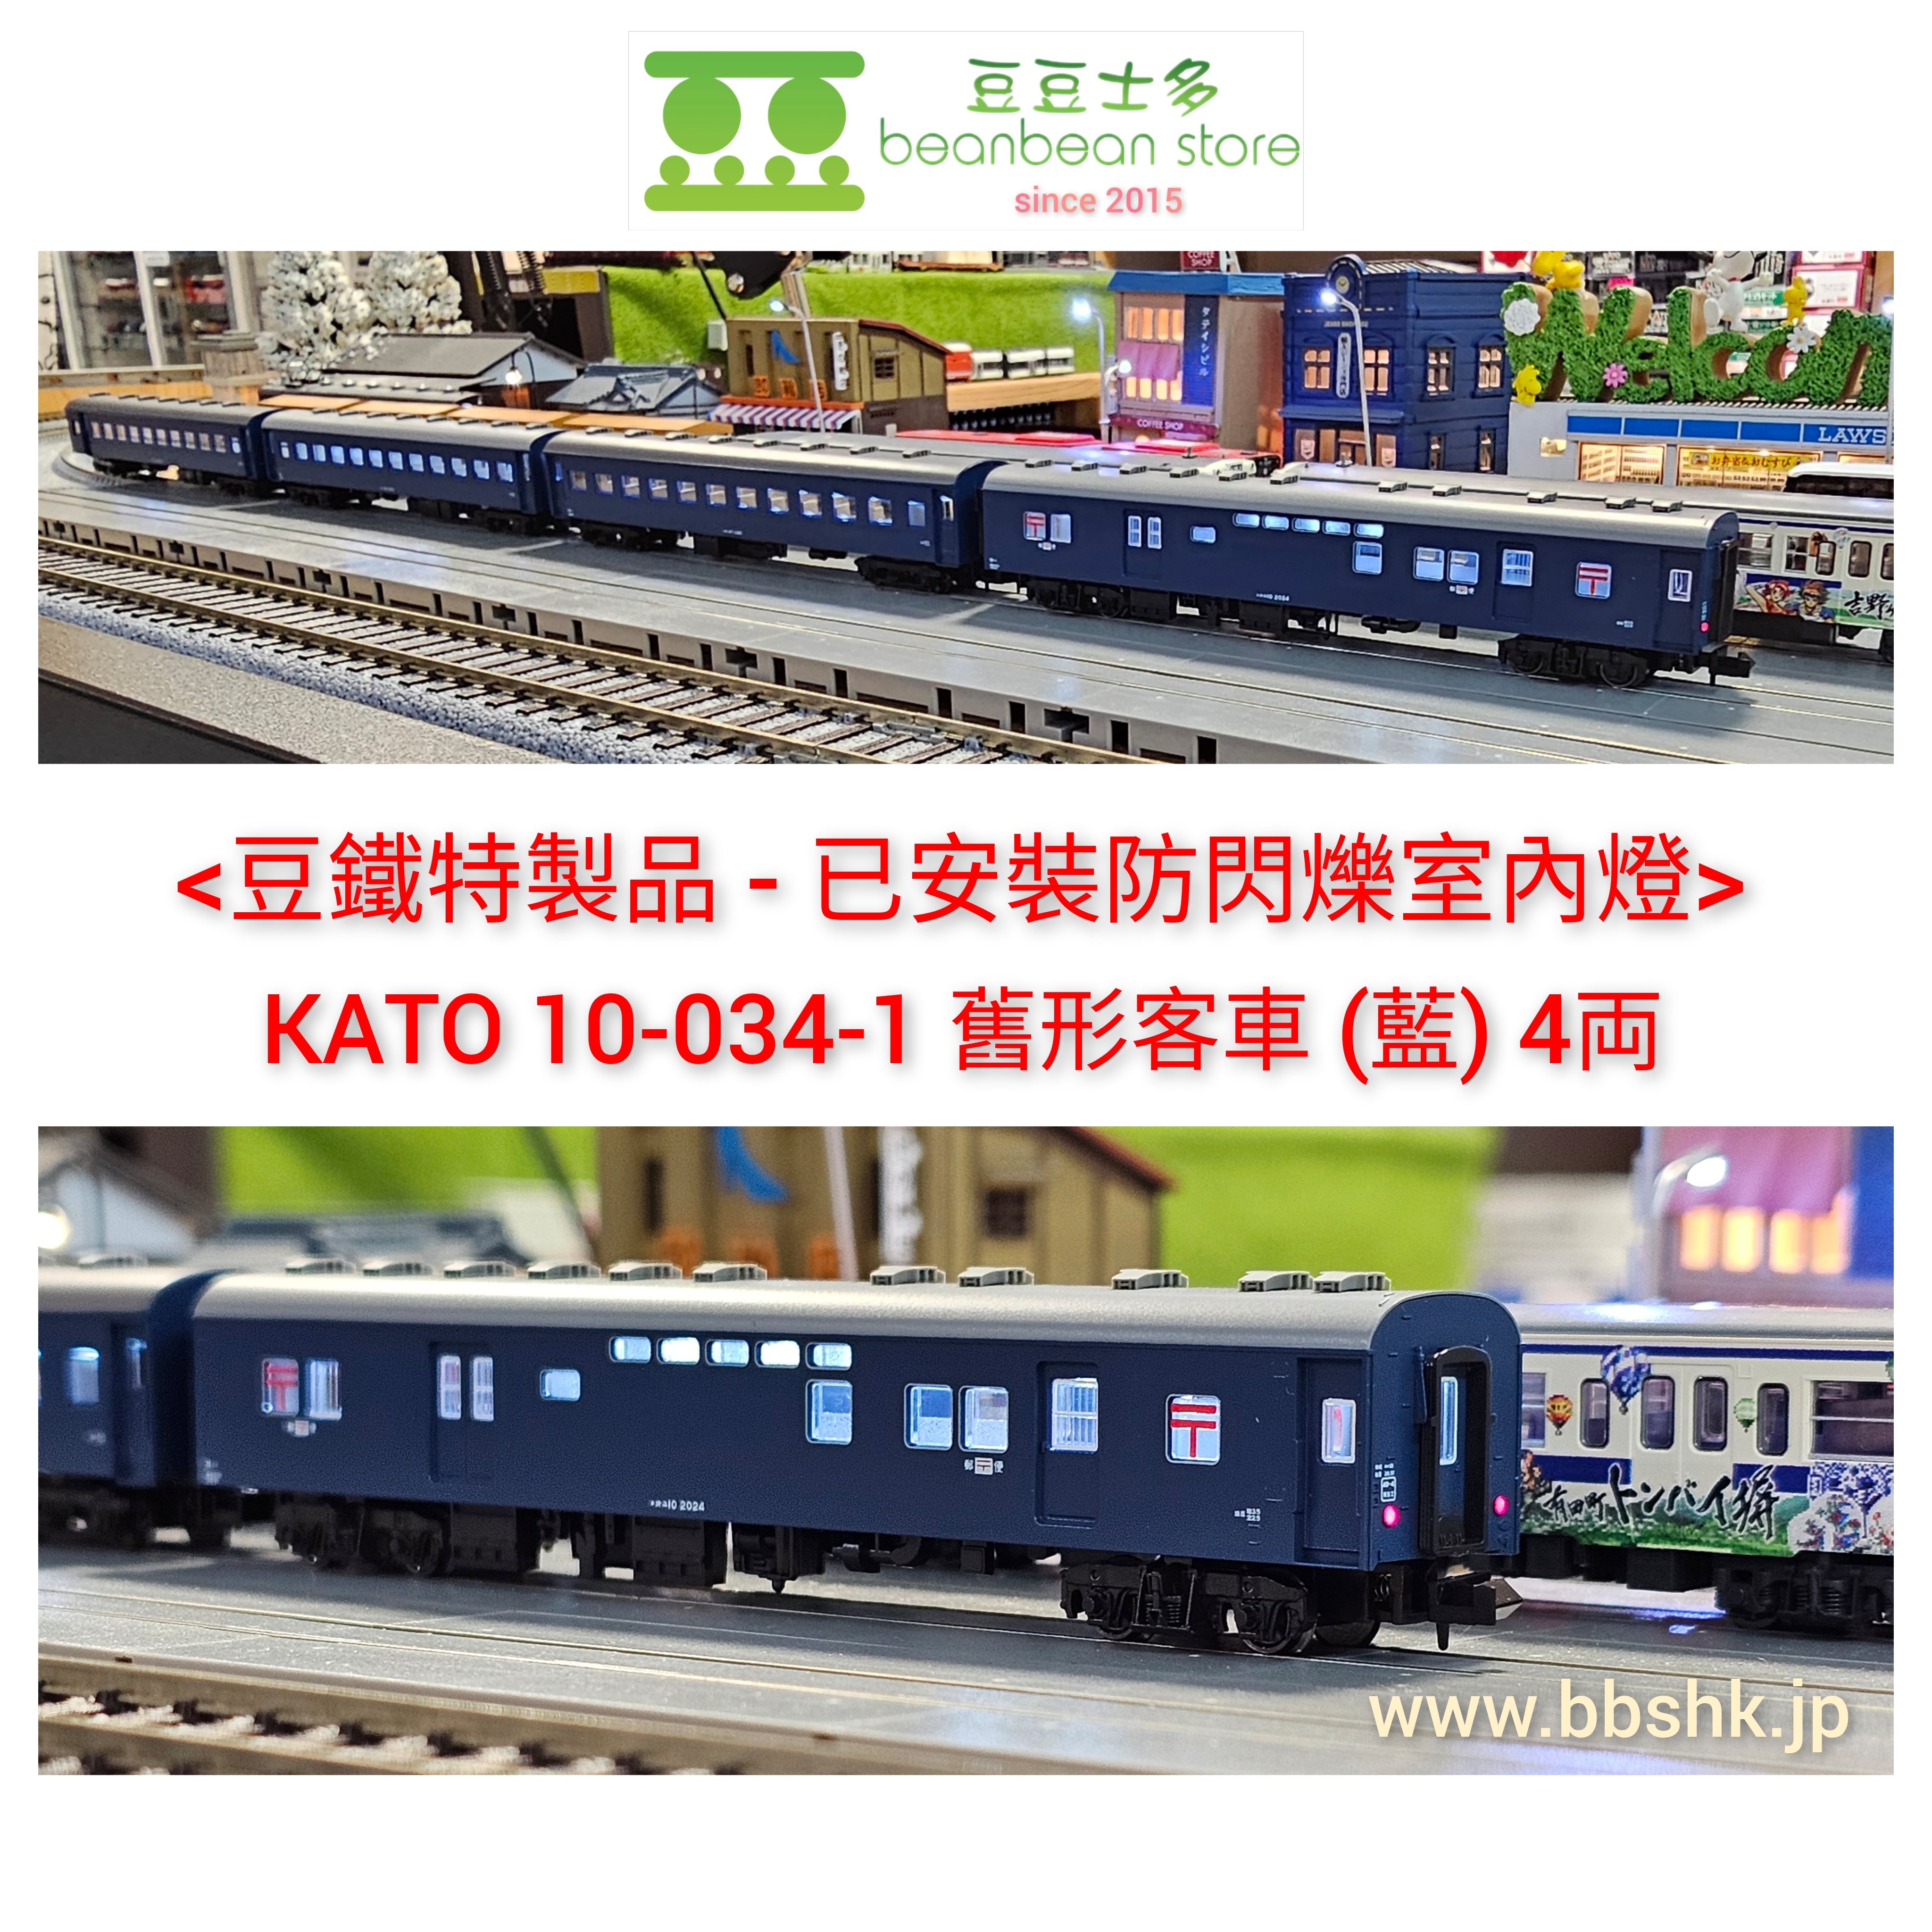 豆鐵特製品> KATO 10-034-1 舊形客車(藍) 4両